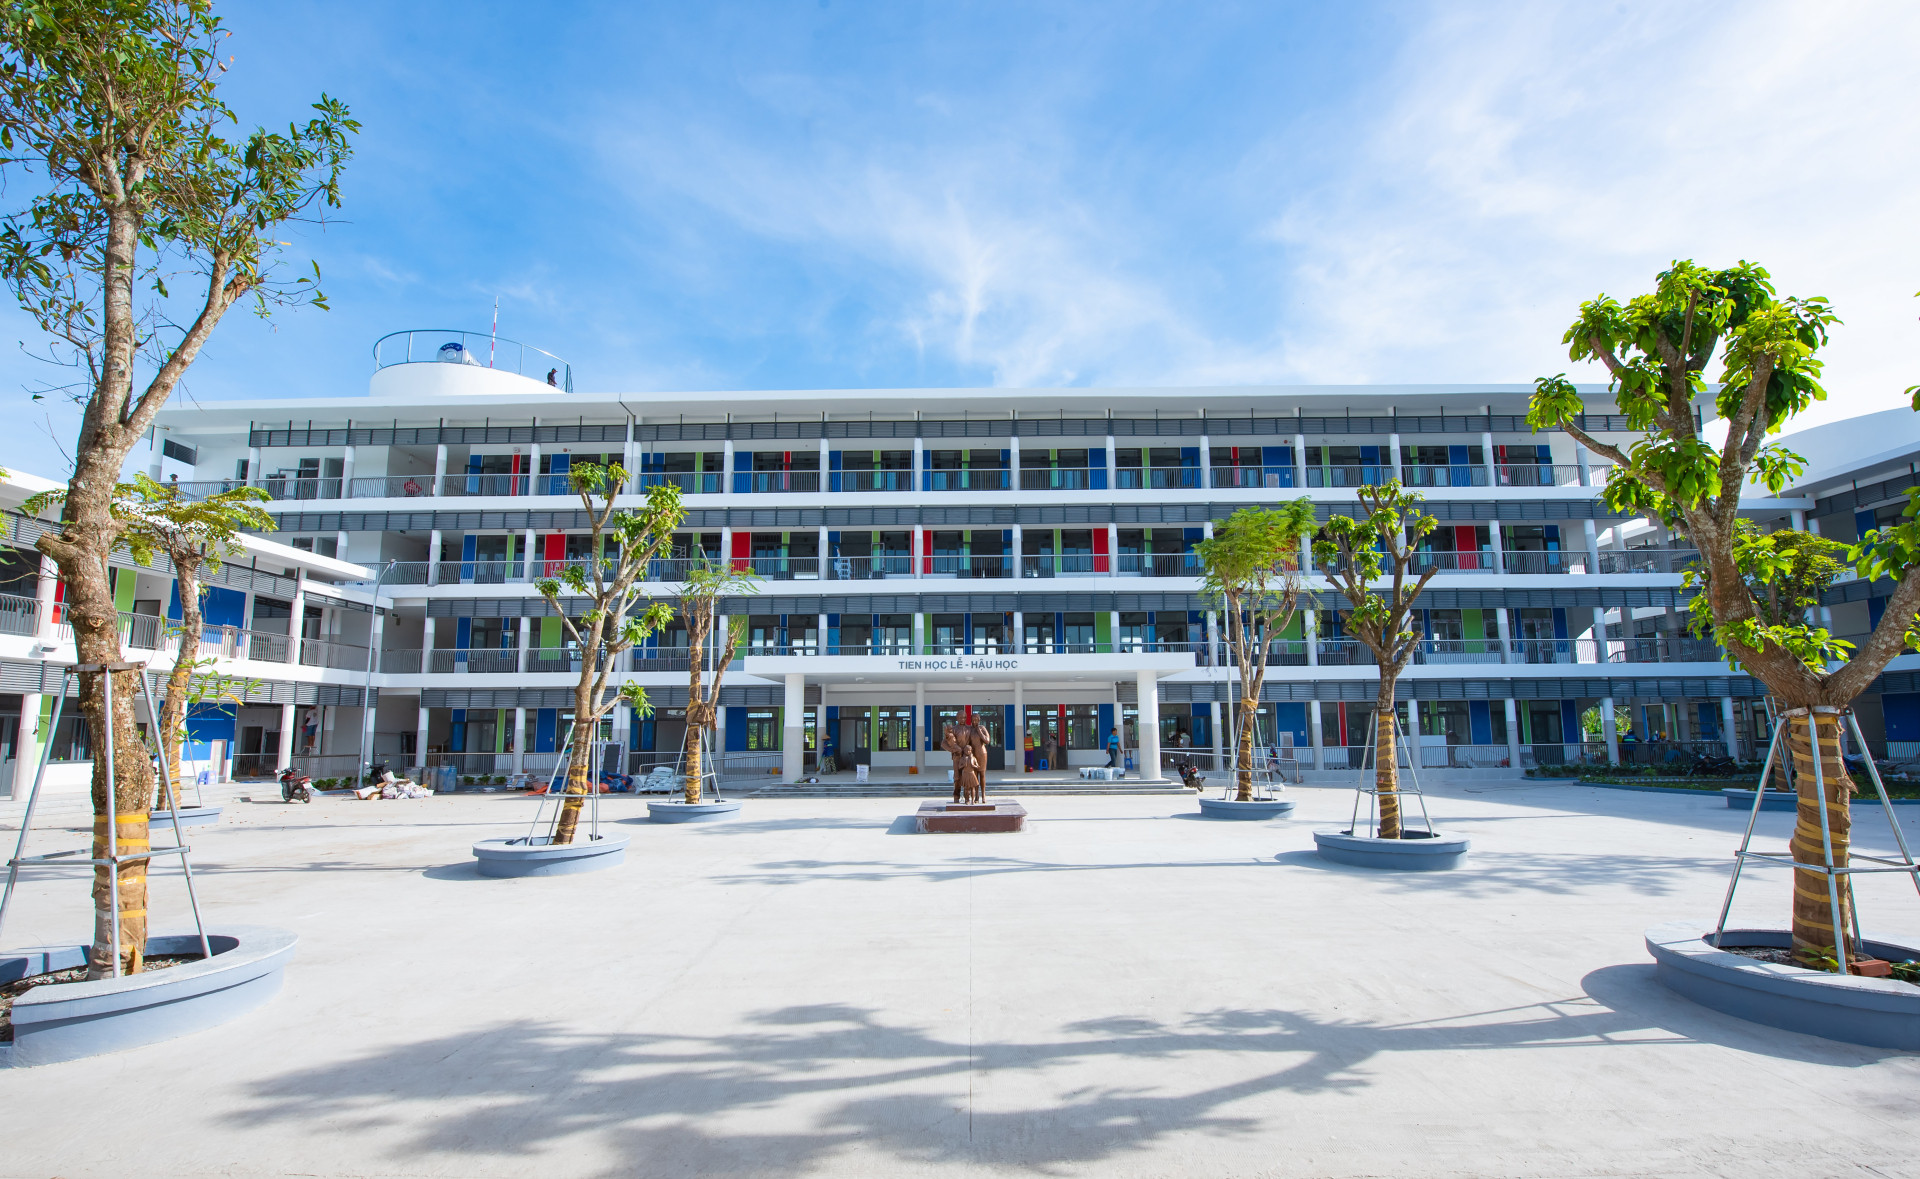 Toàn cảnh ngôi trường với tòa nhà hiện đại bao gồm 24 phòng học và 28 phòng học chức năng.